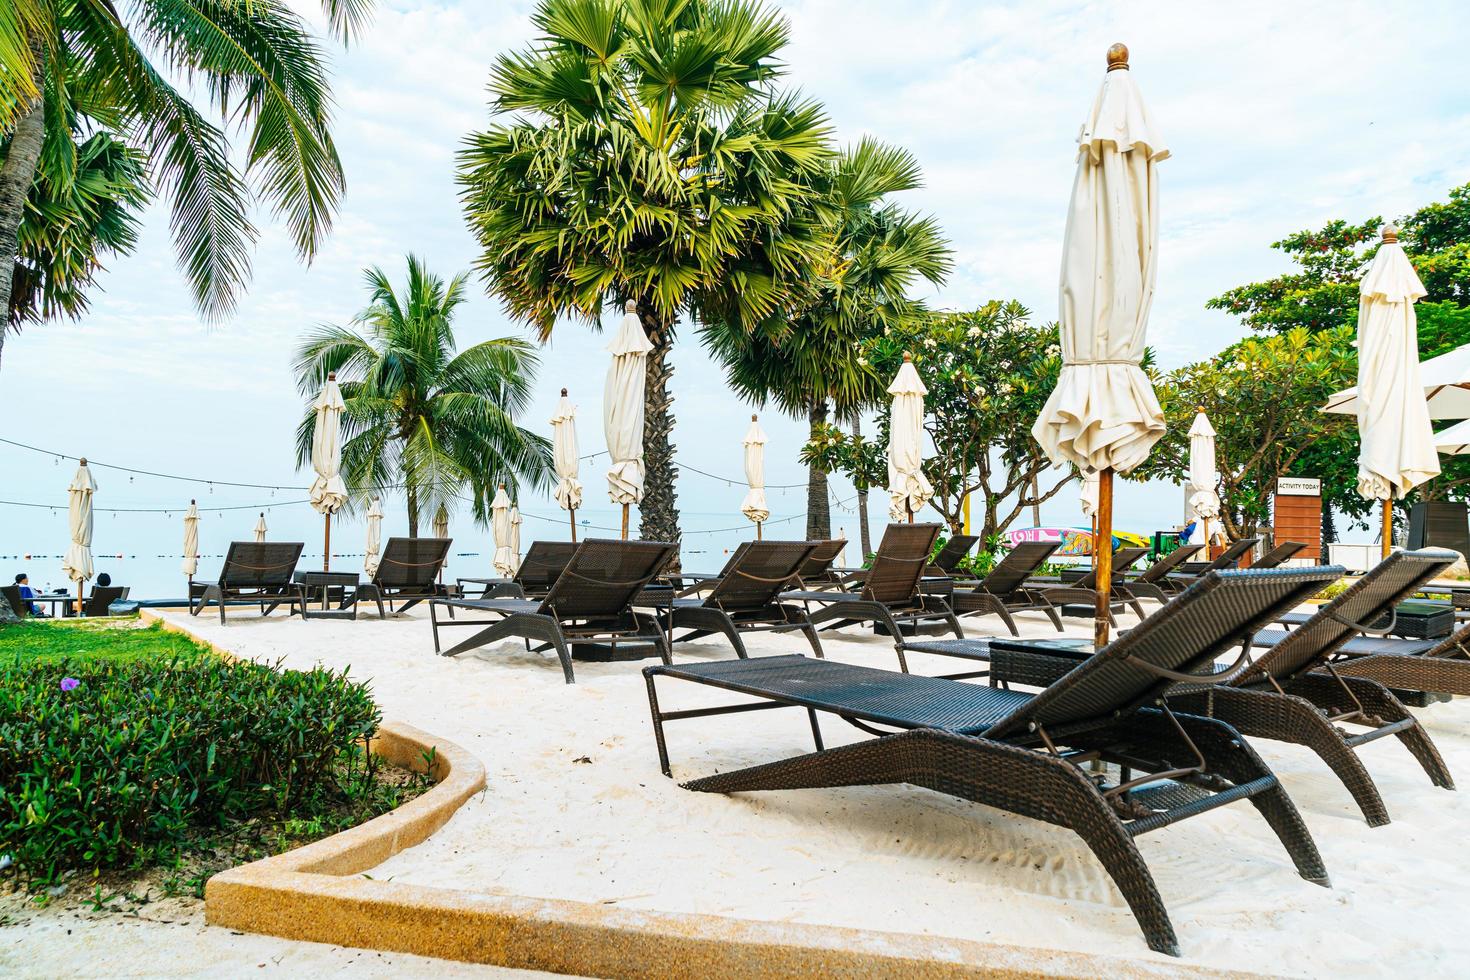 chaise de plage vide avec des palmiers sur la plage avec fond de mer photo